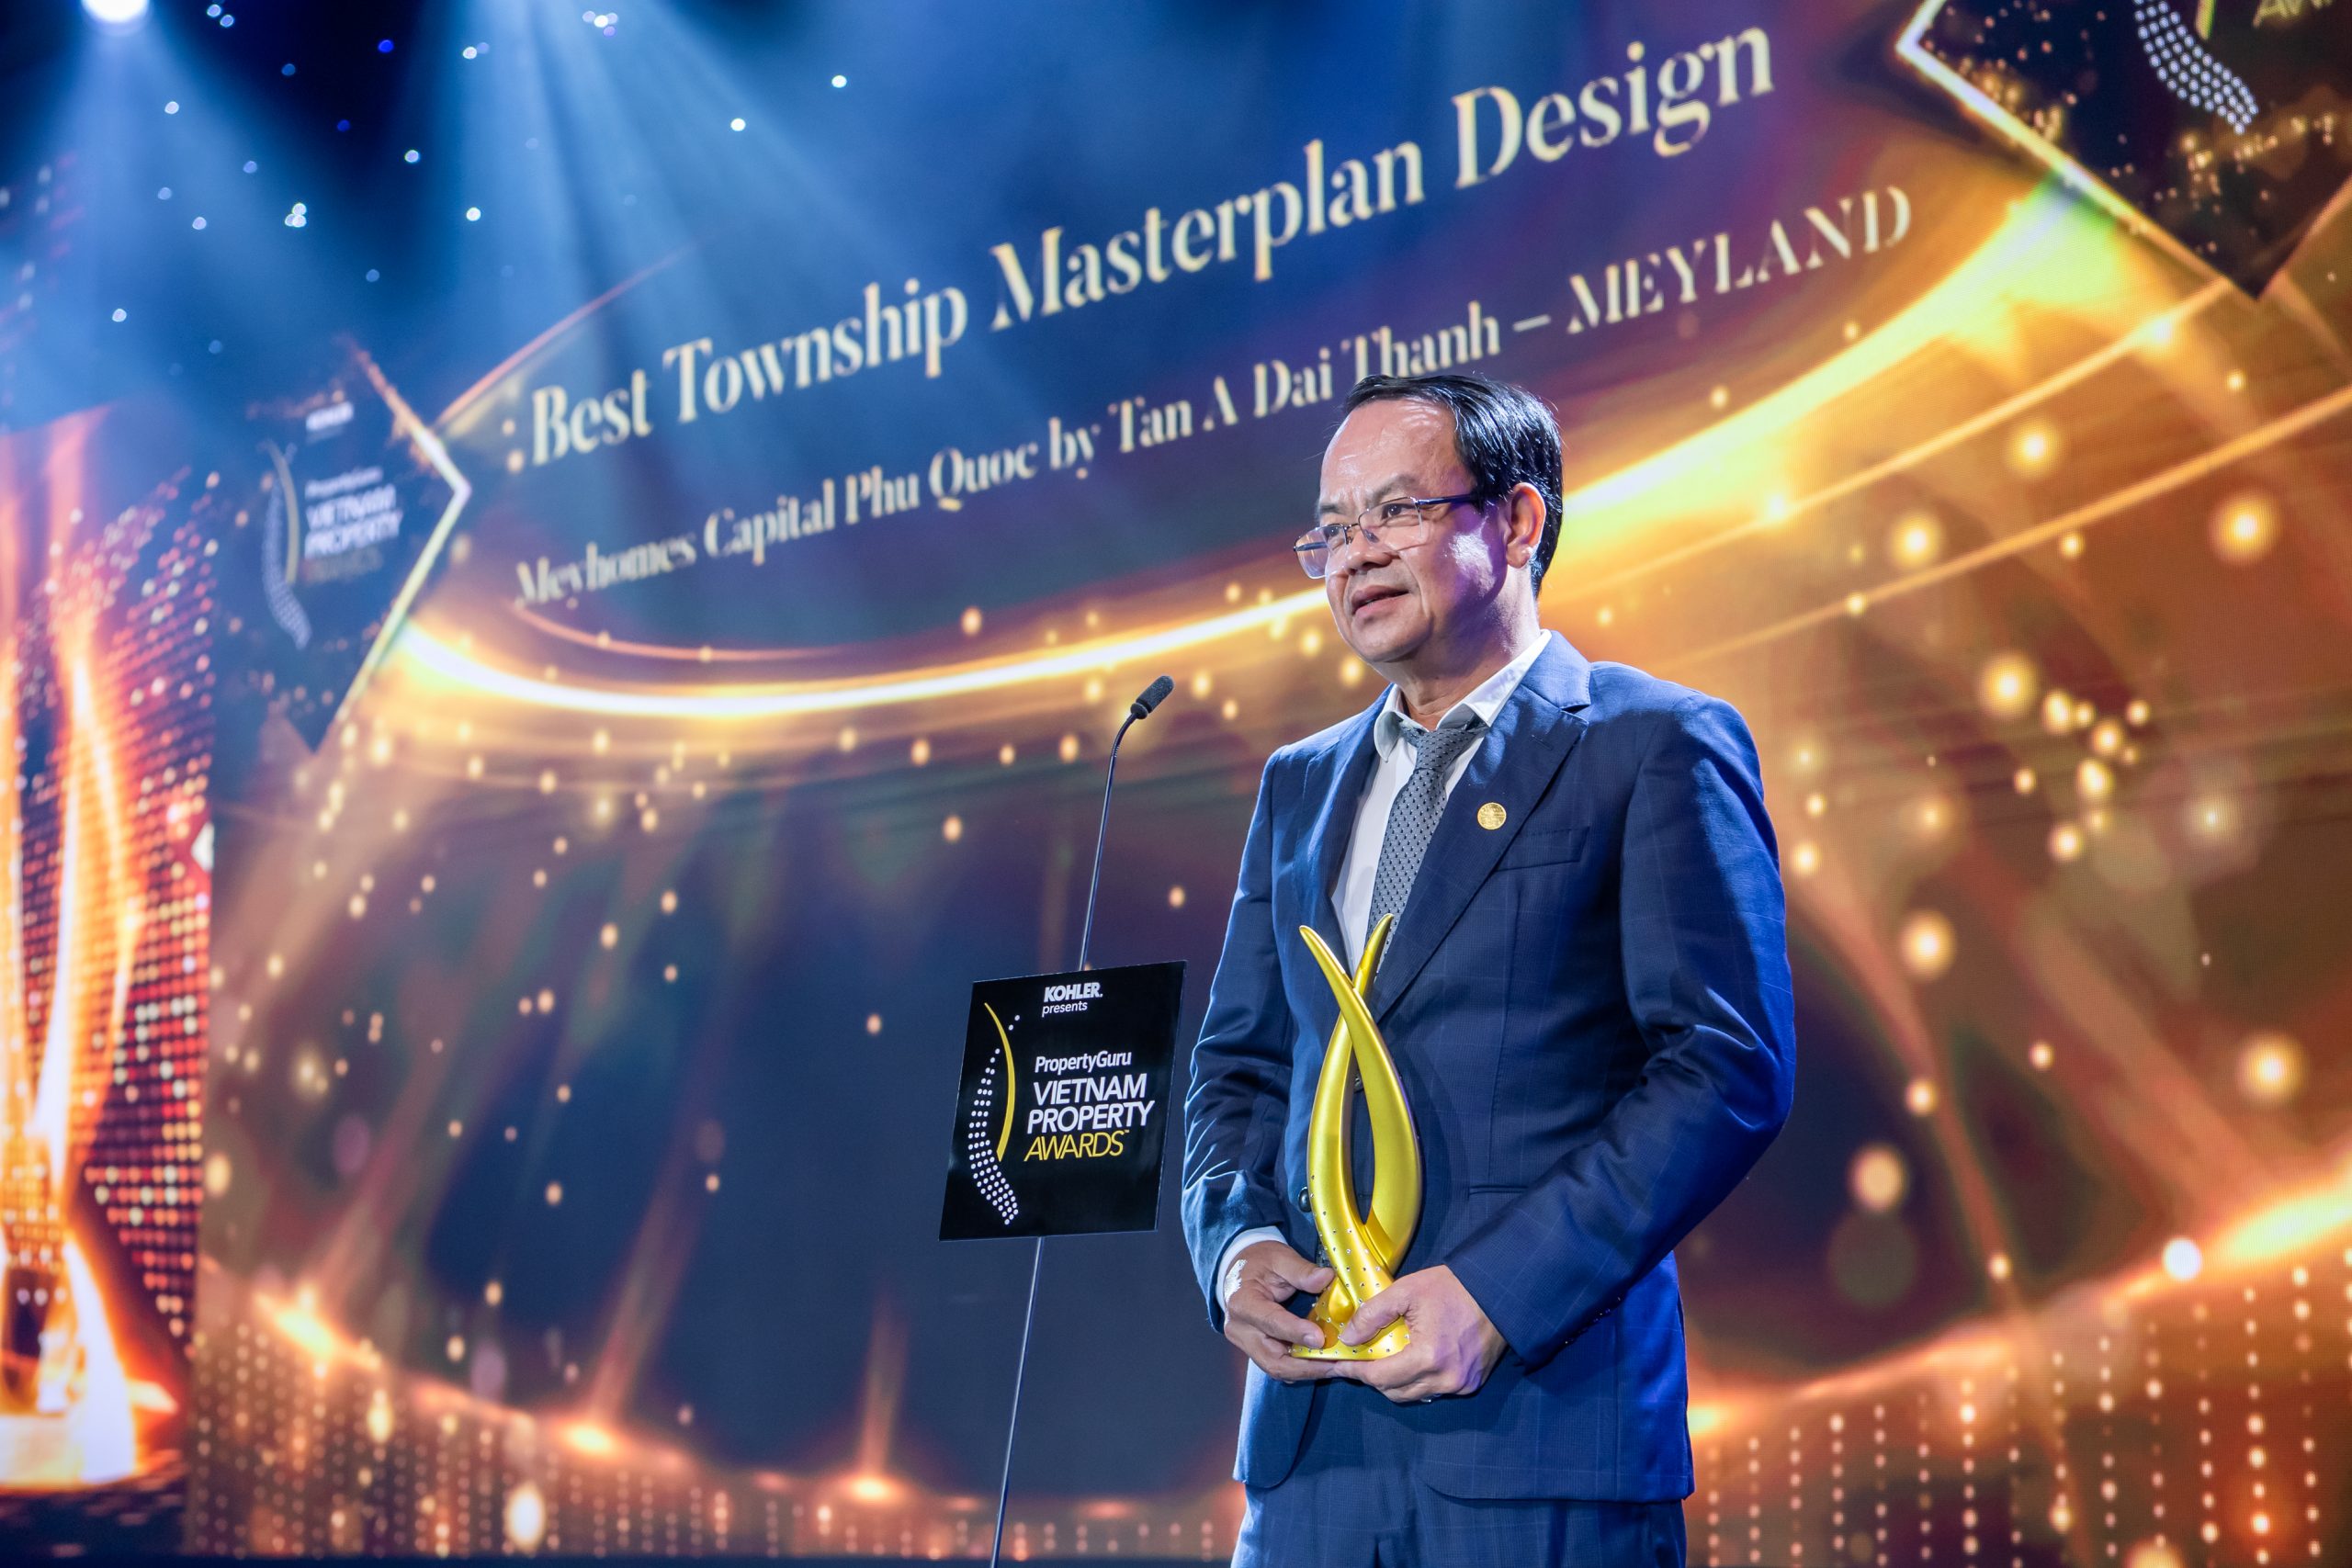 Tân Á Đại Thành – Meyland chiến thắng 4 giải thưởng lớn tại PropertyGuru Vietnam Property Awards 2022